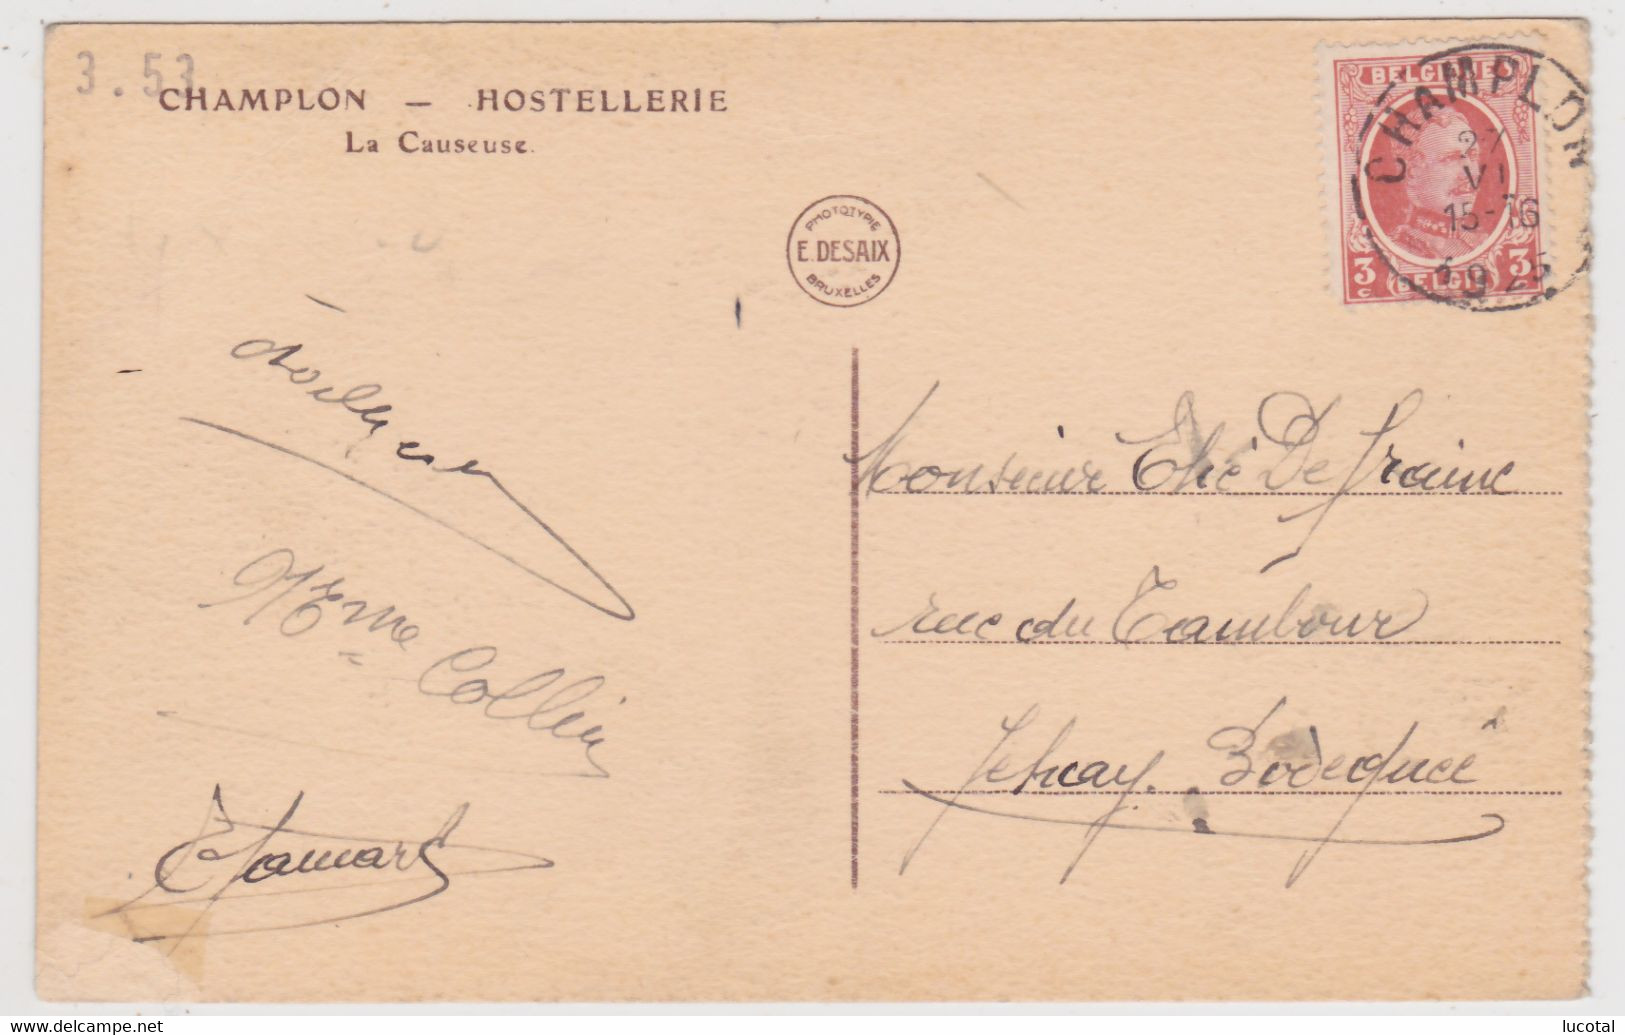 Champlon - Hostellerie - La Causeuse - Edit. E. Desaix - Tenneville